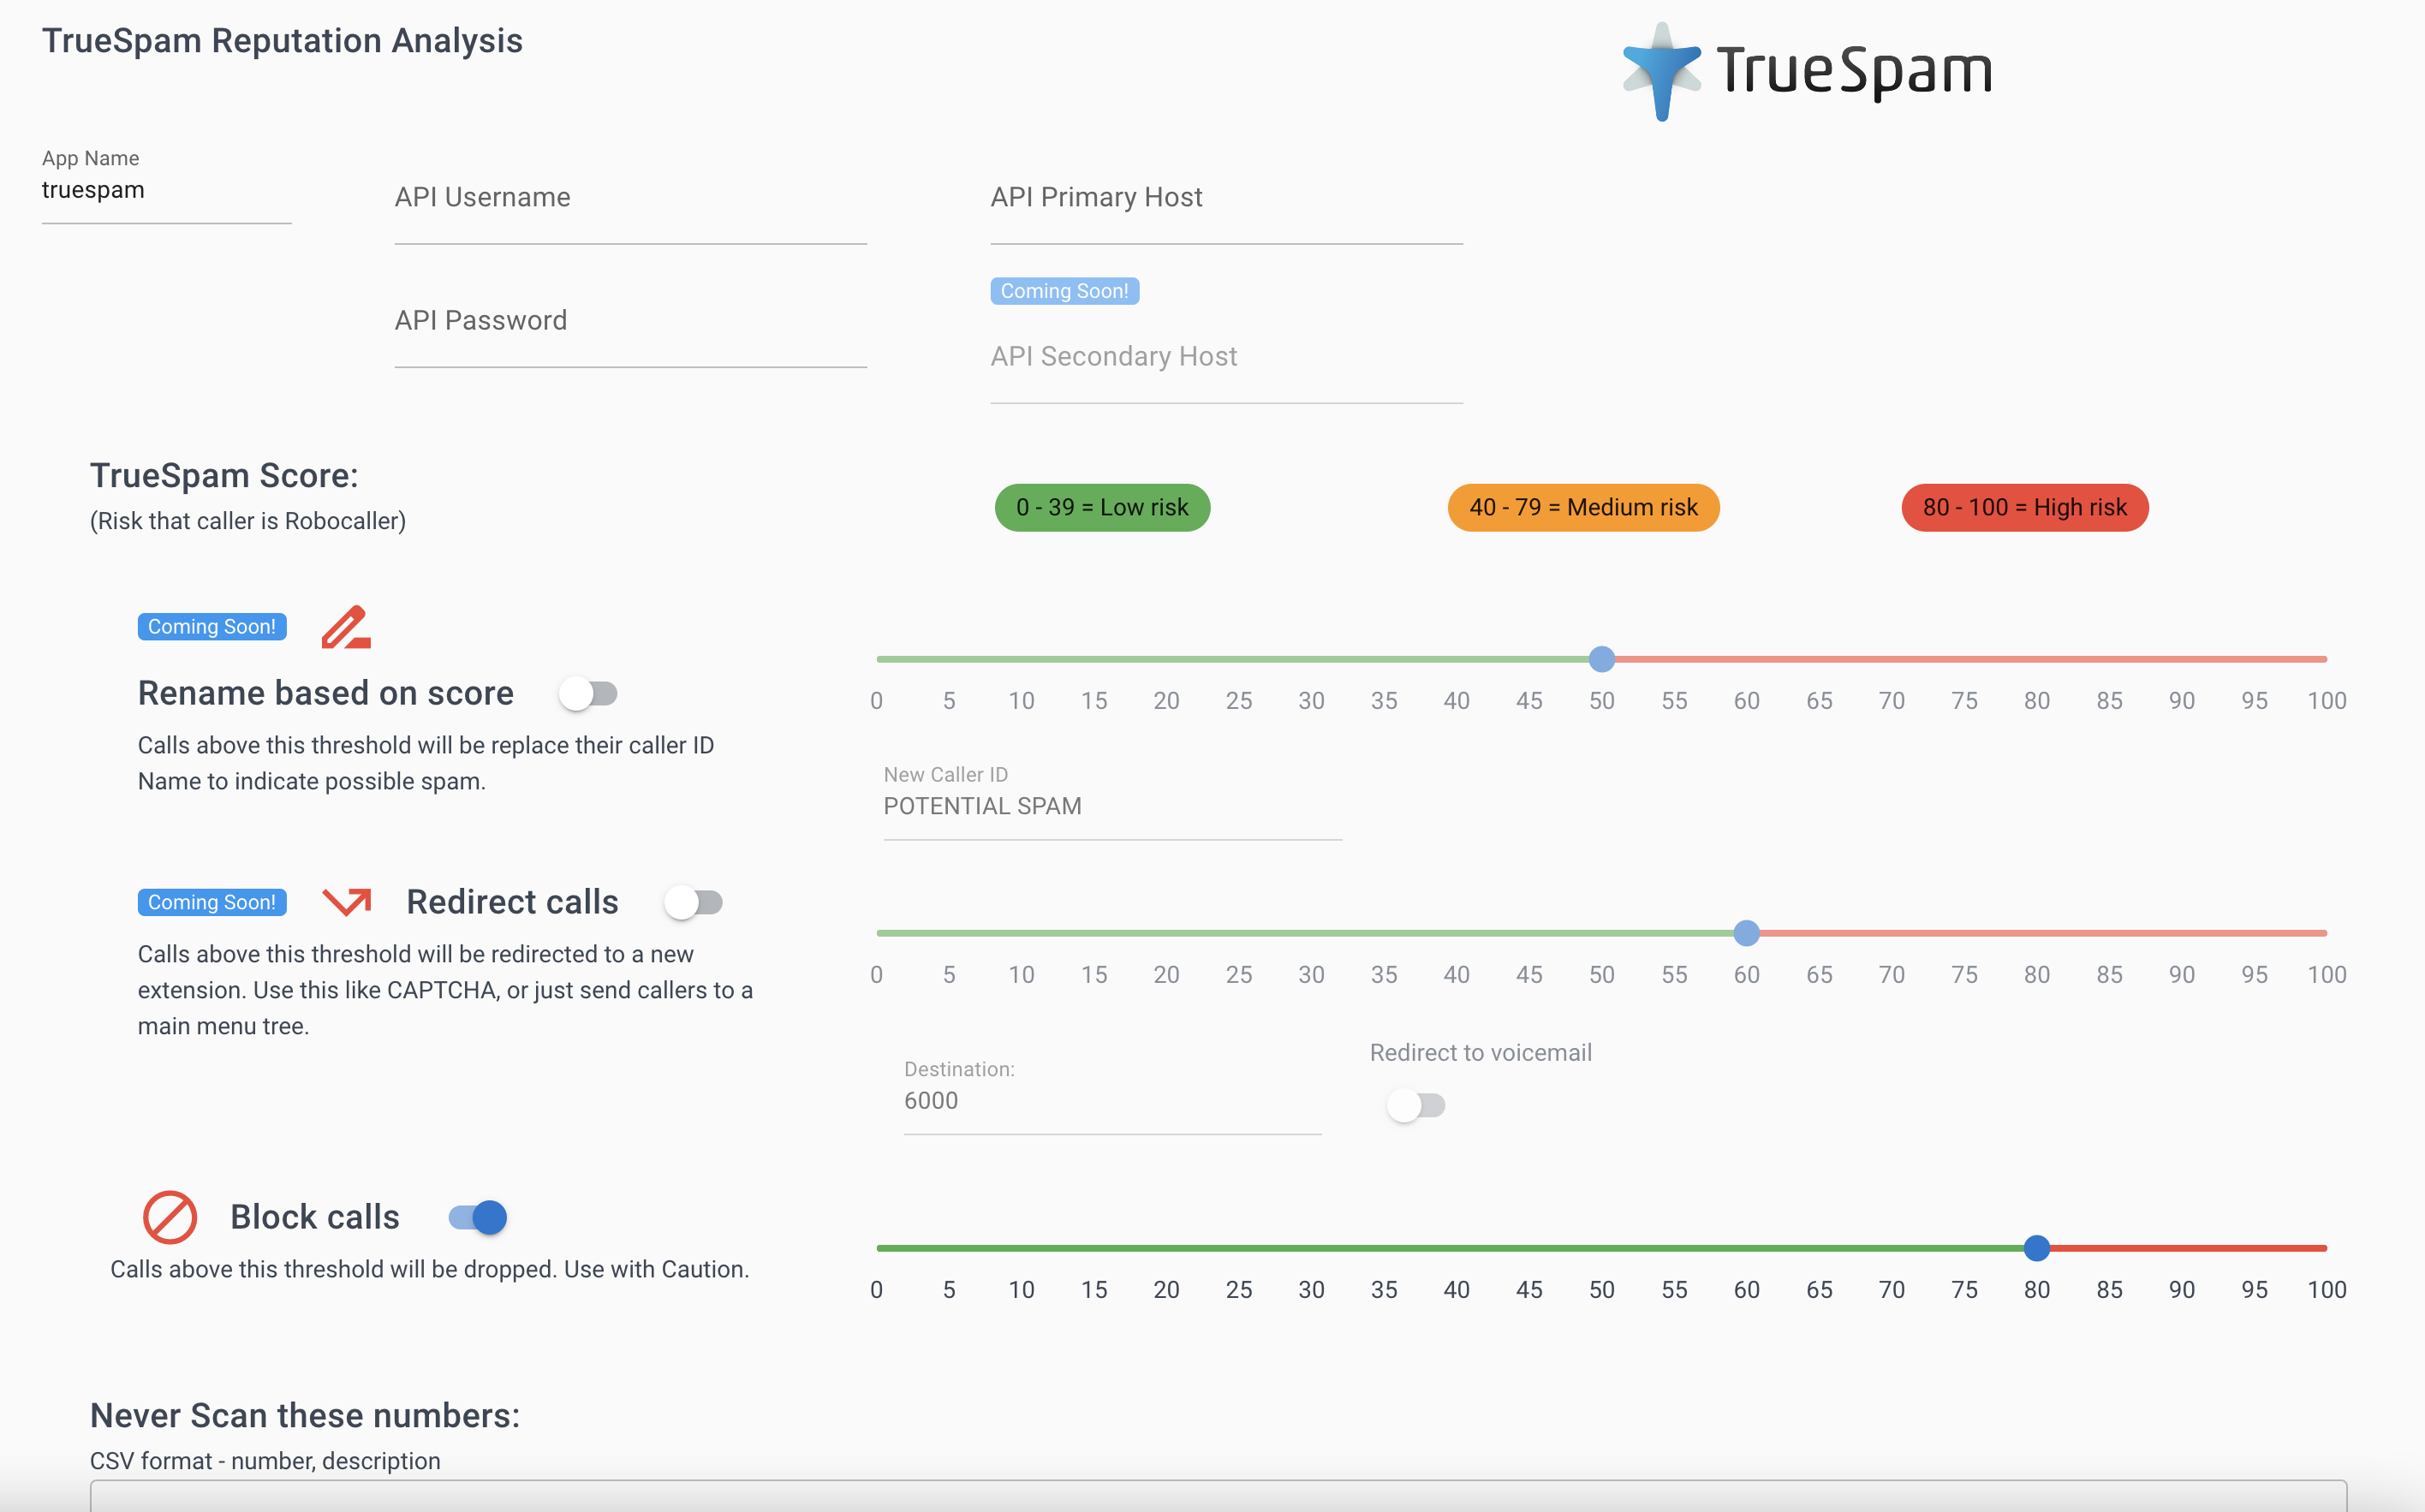 Screenshot showing an overview of the TrueSpam App